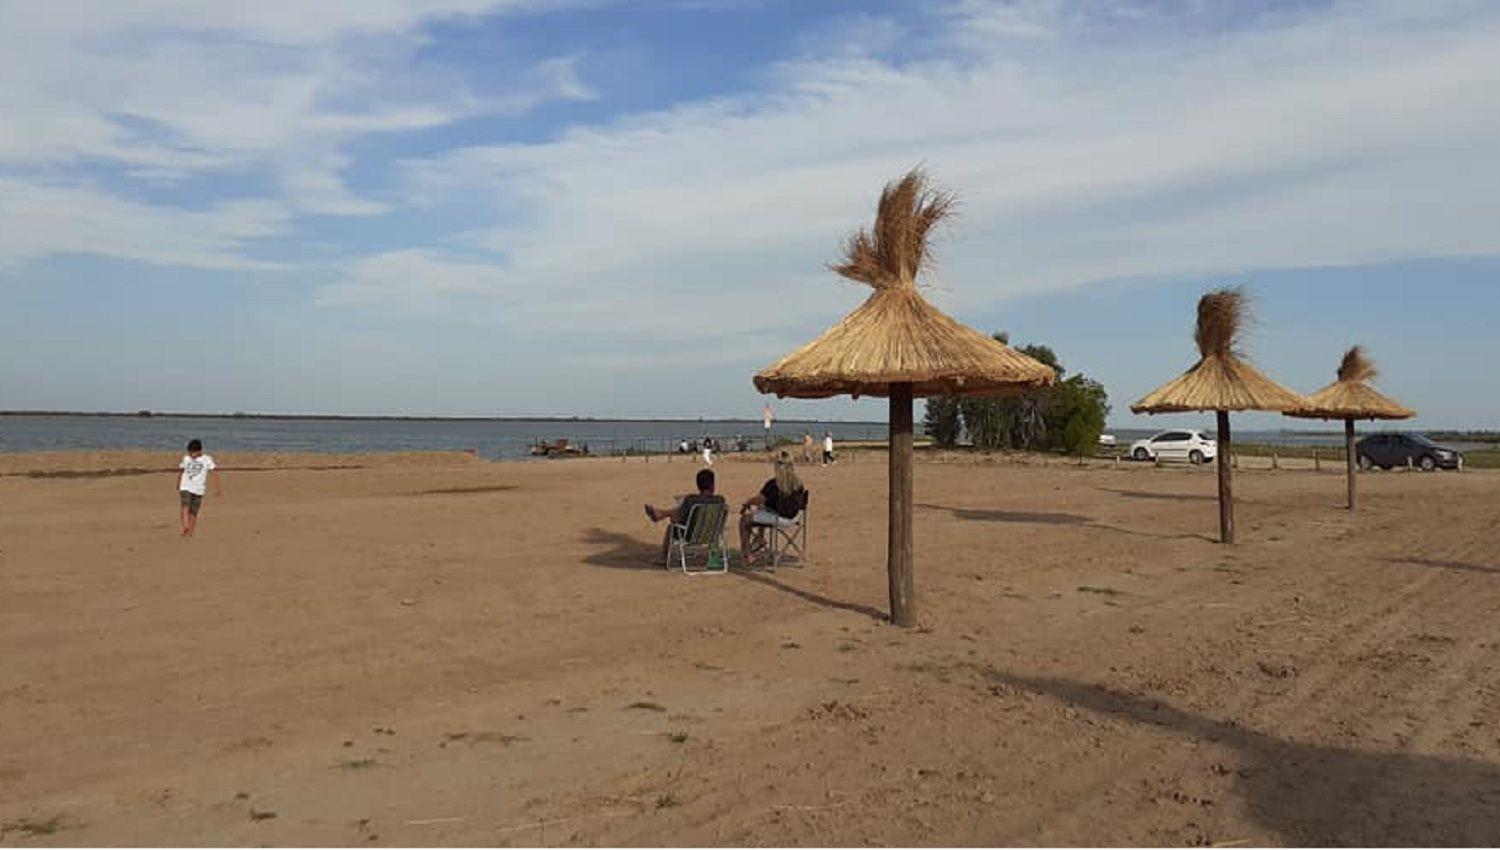 Las 4 playas de riacuteo para conocer este verano en Argentina